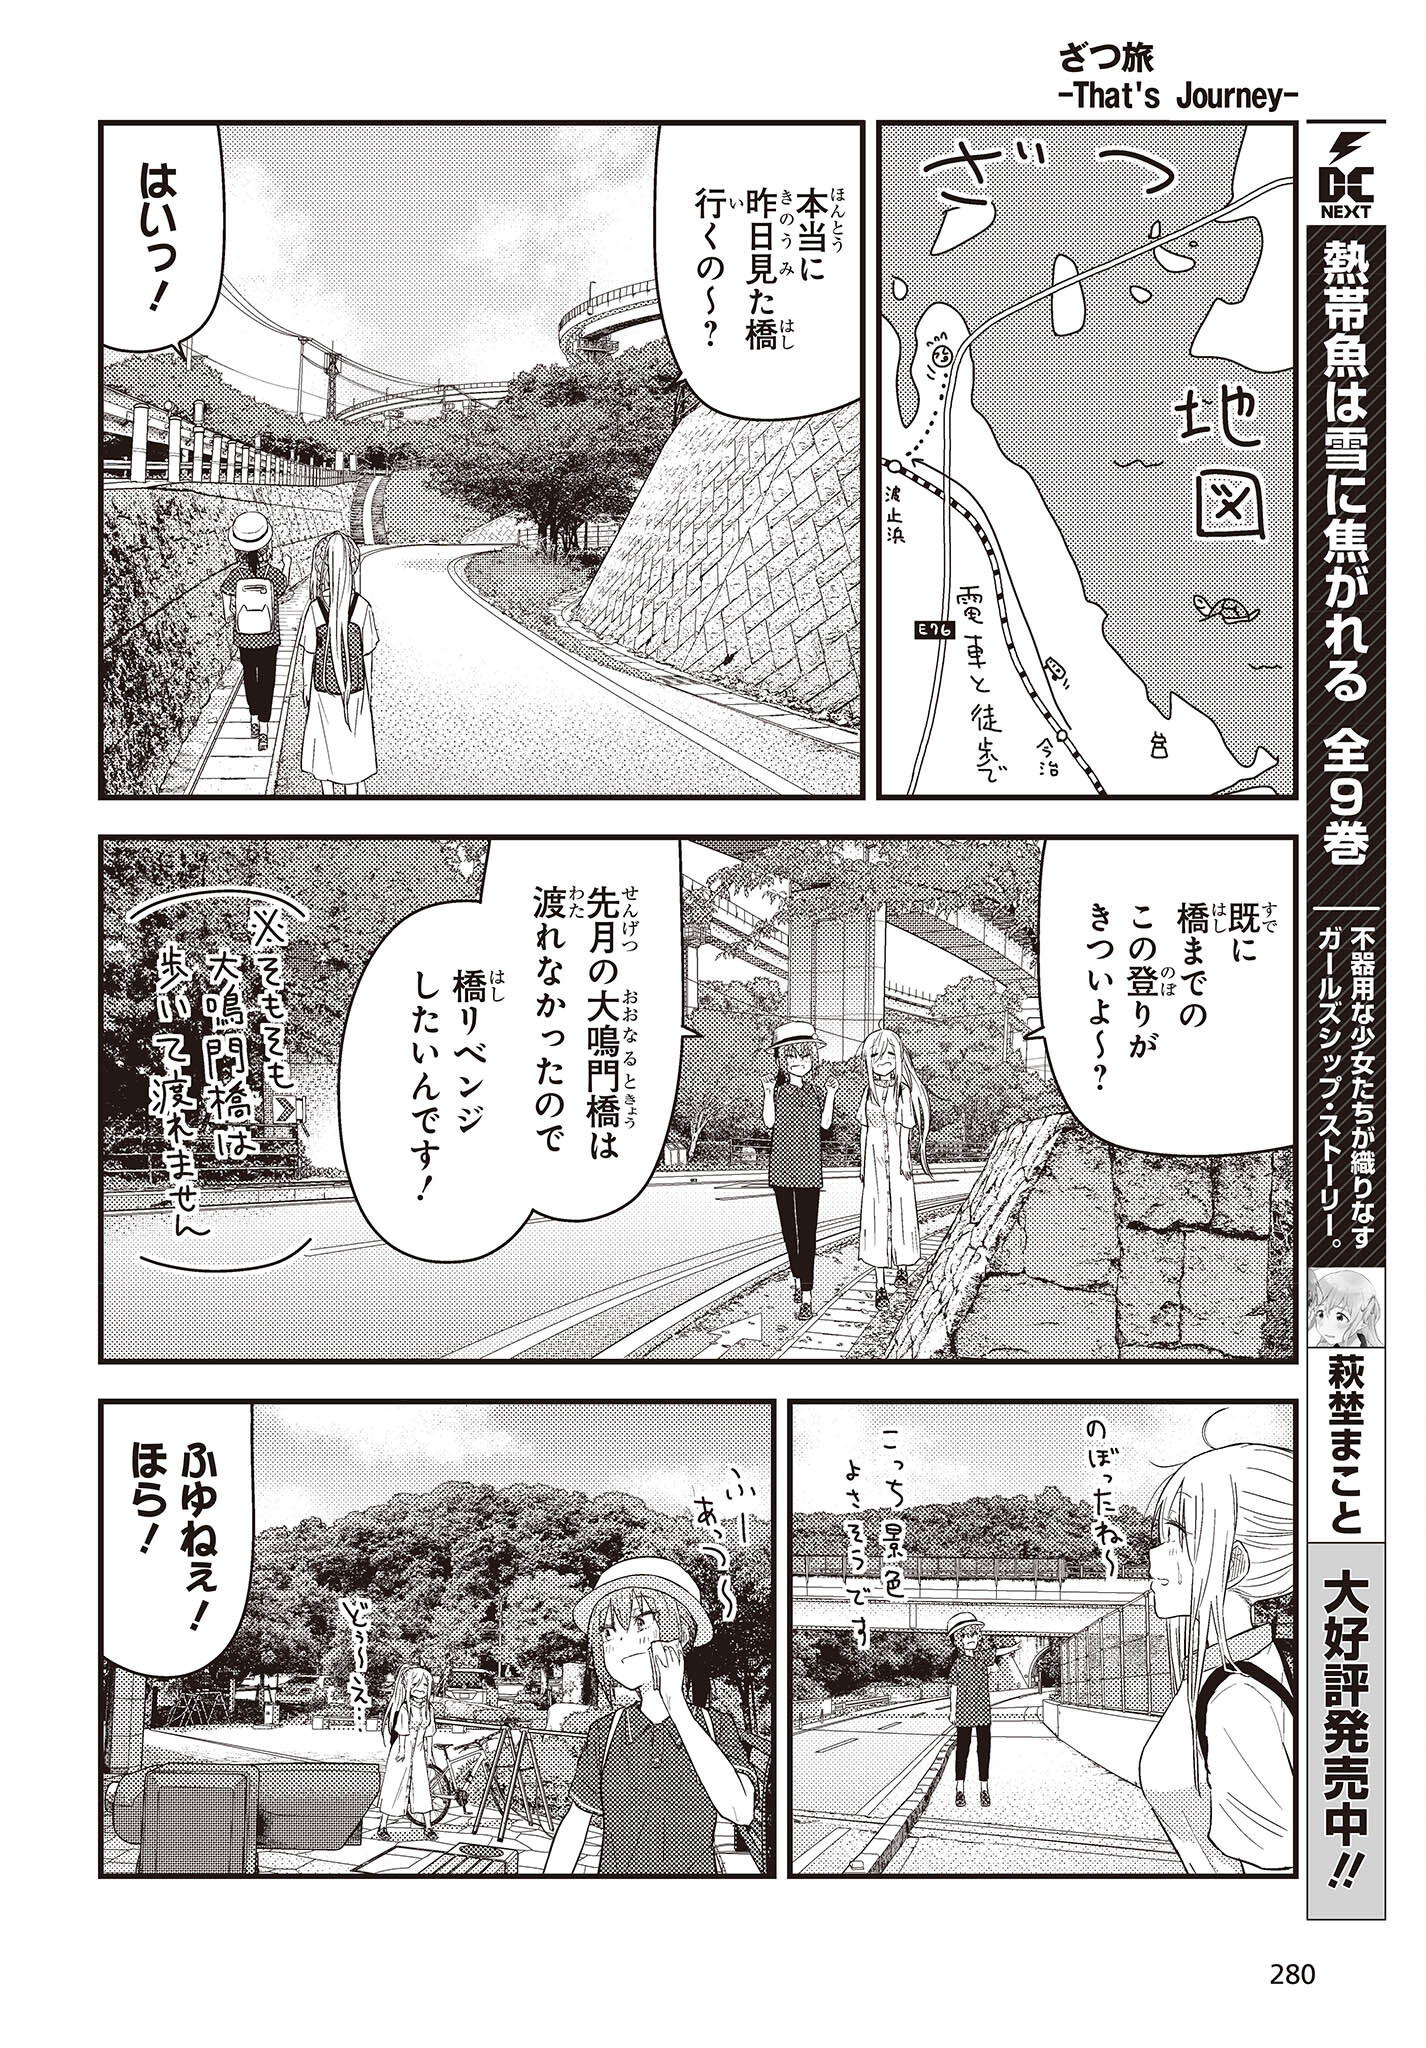 ざつ旅-That's Journey- 第27話 - Page 20